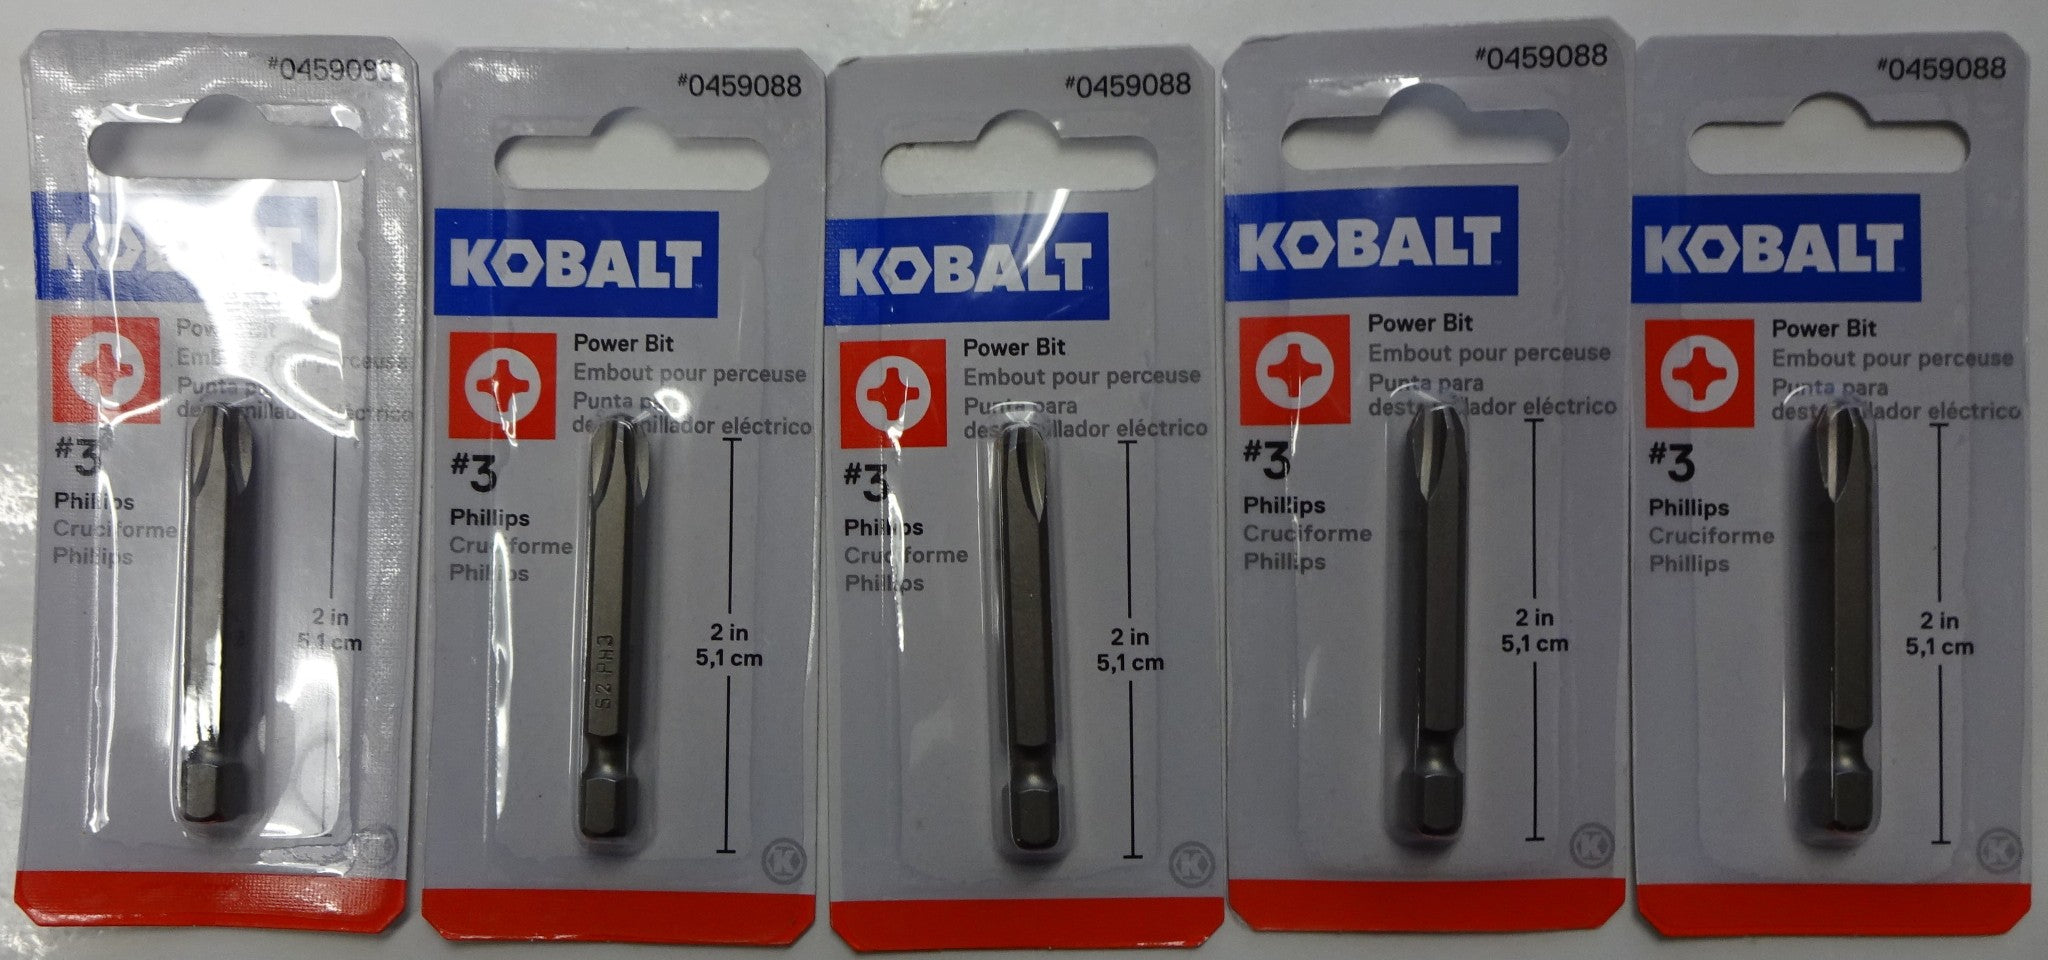 Kobalt 0459088 #3 Phillips 2” Power Bit 5packs